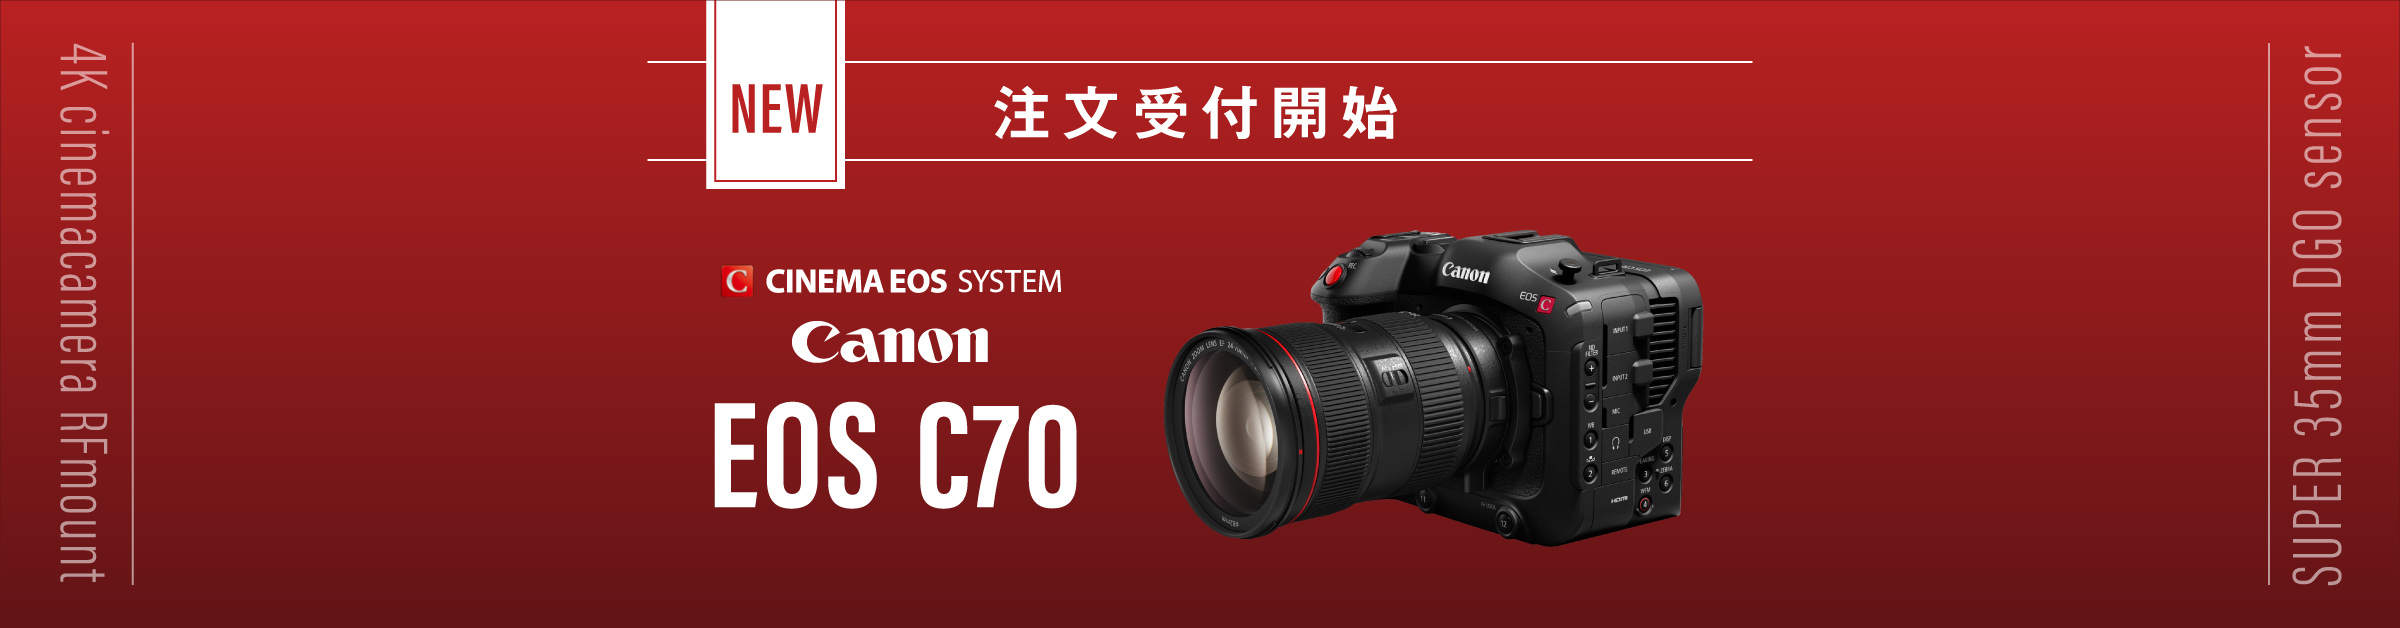 好評発売中】キヤノンからシネマカメラの新製品「EOS C70」が発表され